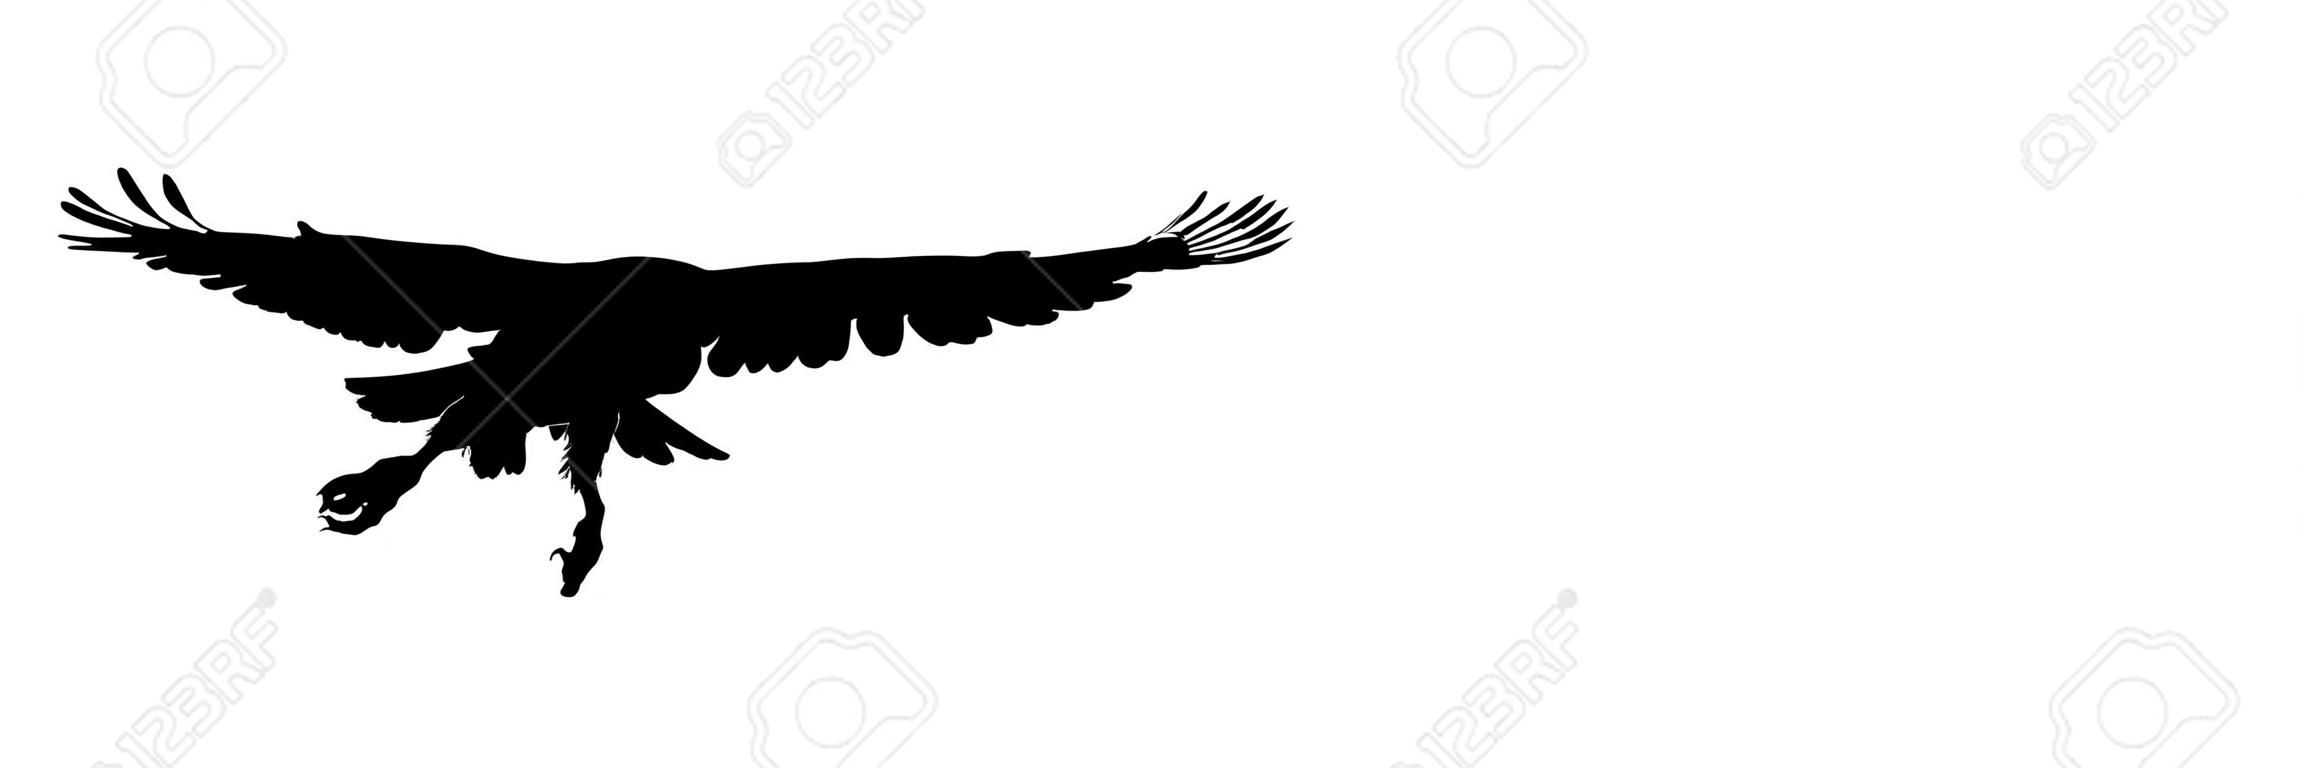 Uccelli neri della siluetta isolati su priorità bassa bianca. Falco, falco, aquila o orel. Un grande predatore si libra nell'aria. Icona clipart, elemento grafico semplice per il design. Illustrazione vettoriale Eps 10.